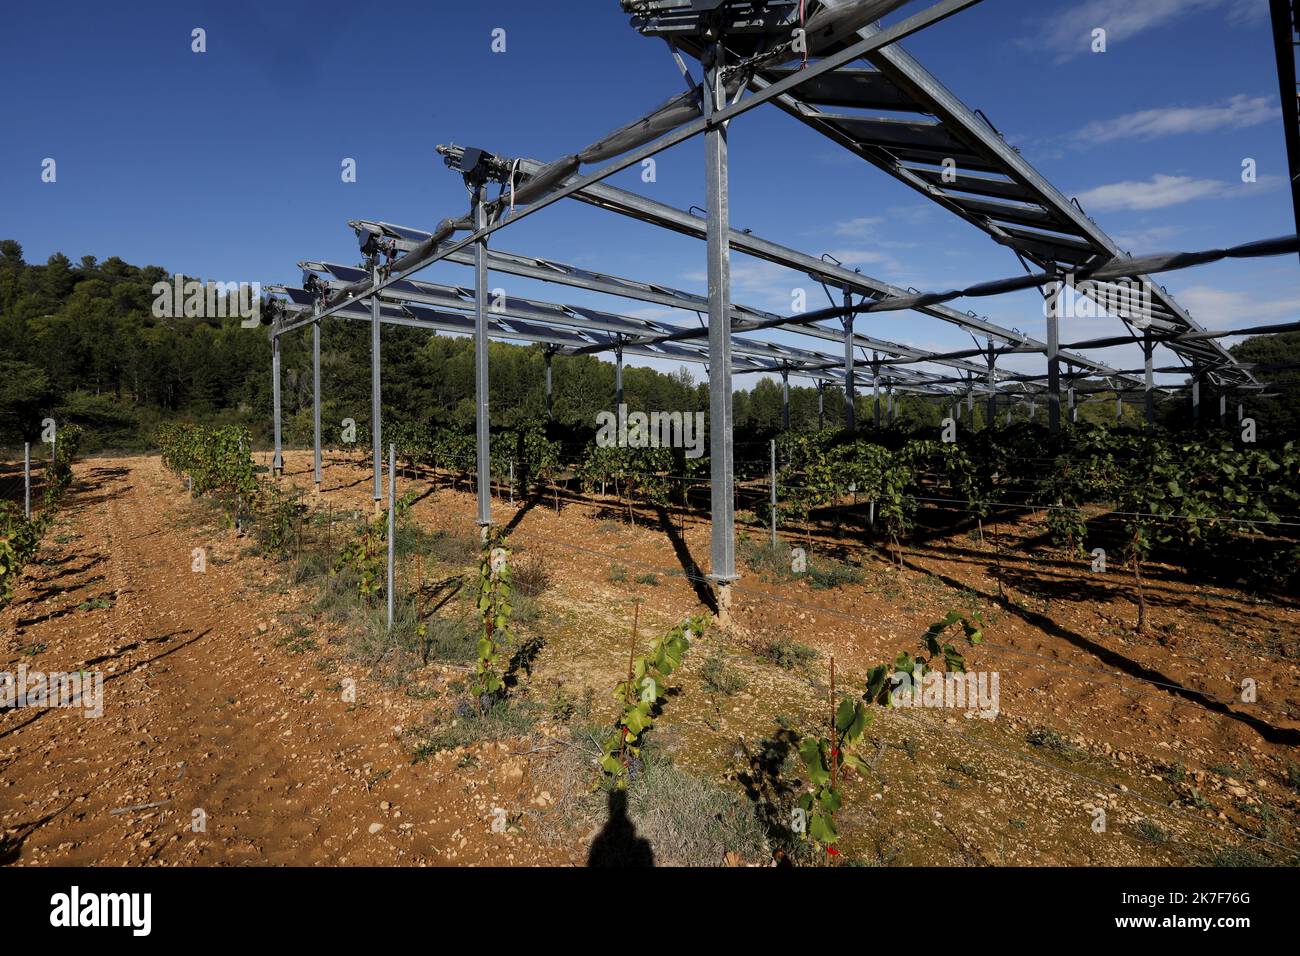 ©PHOTOPQR/NICE MATIN/Frank Muller ; rians ; 08/10/2021 ; Gautier Hugues viticulteur dont certaines parcelles de vignes situées Chemin de l'Ancienne Voie Ferrée, ont été équipées de panneaux photovoltaïques pour lutter contre le changement climatique, notamment la sécheresse, tout en revendant de l'électricité RIANS, FRANCE OCT 8TH 2021. SOUTHERN VINES PROTECTED FROM DROUGHT BY PHOTOVOLTAIC PANELS. AND IN ADDITION WE PRODUCE ELECTRICITY Stock Photo